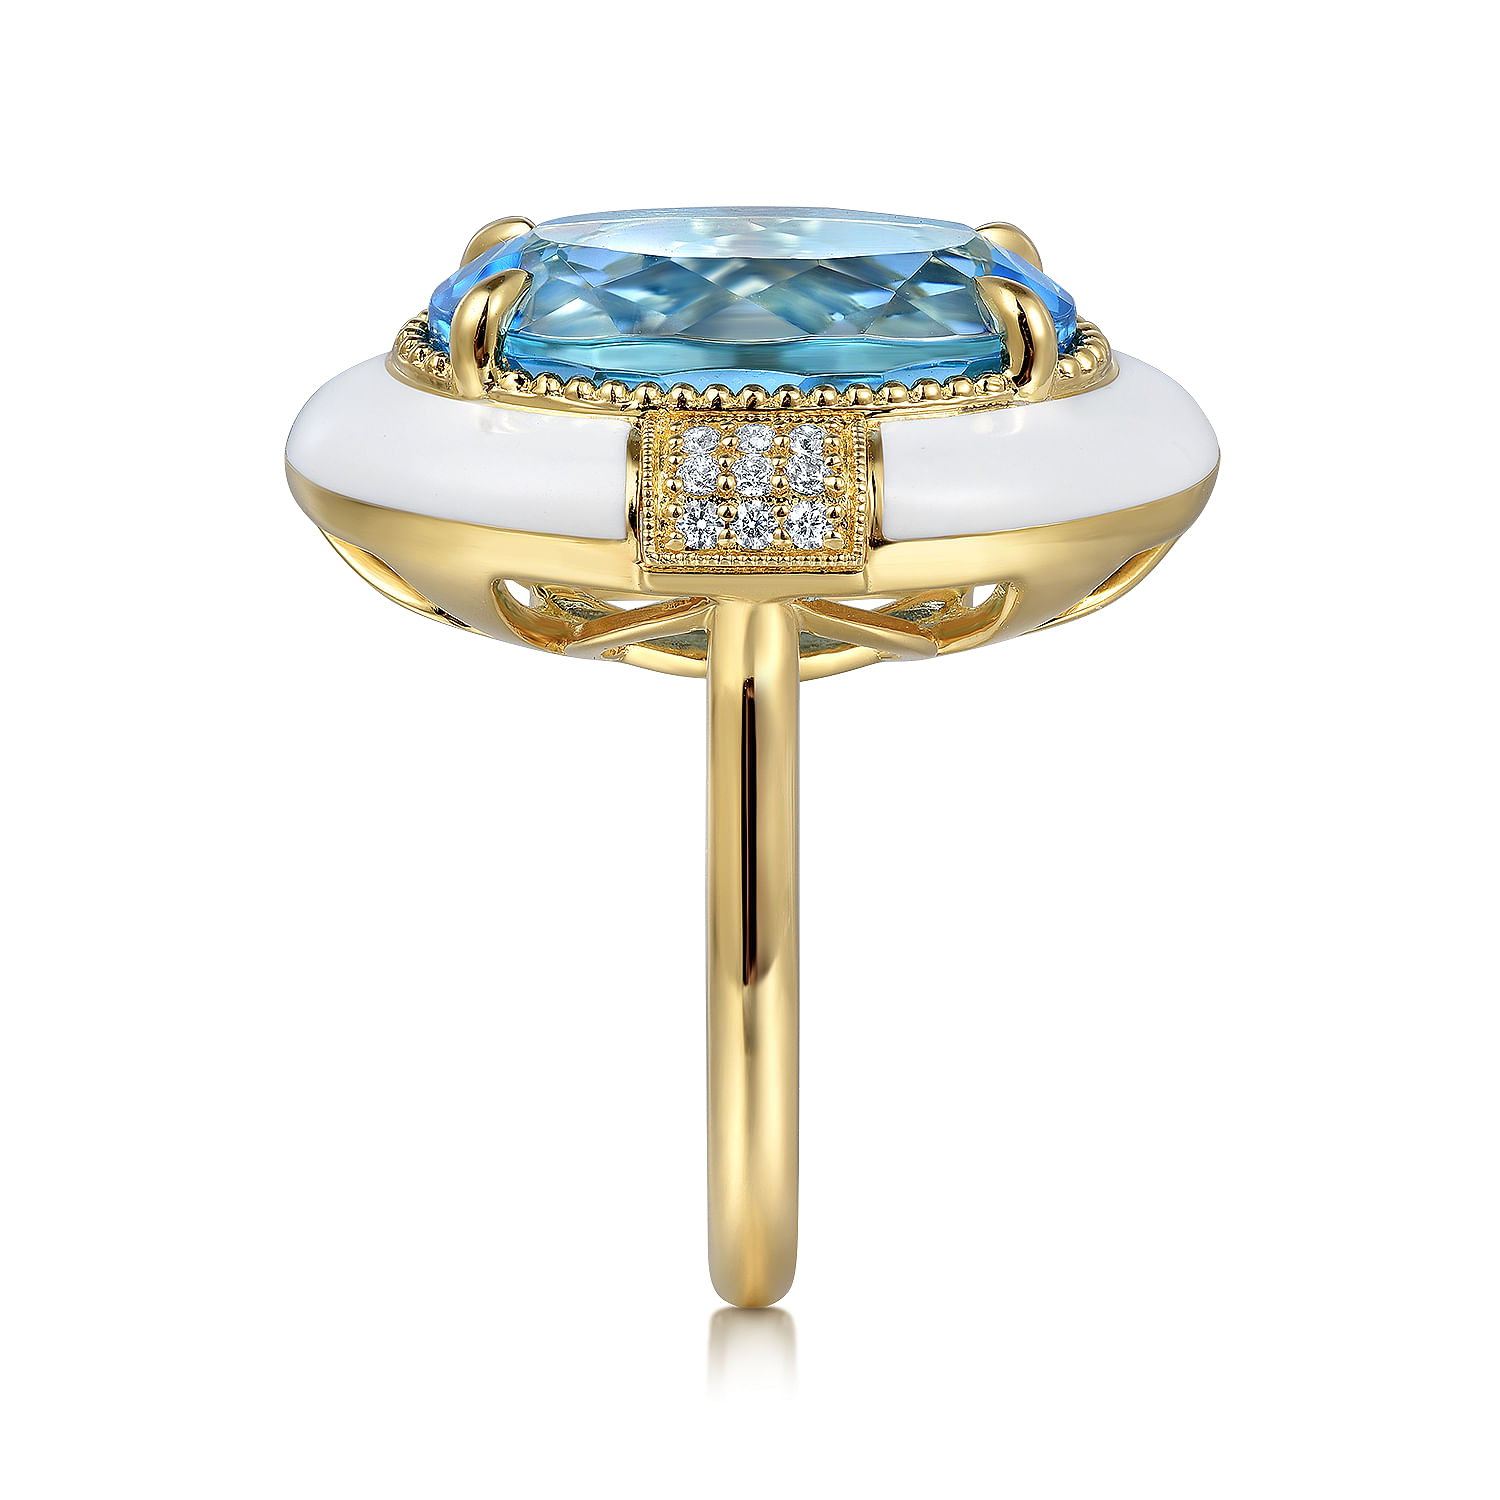 14K Yellow Gold Diamond and Blue Topaz Fashion Ring With White Enamel